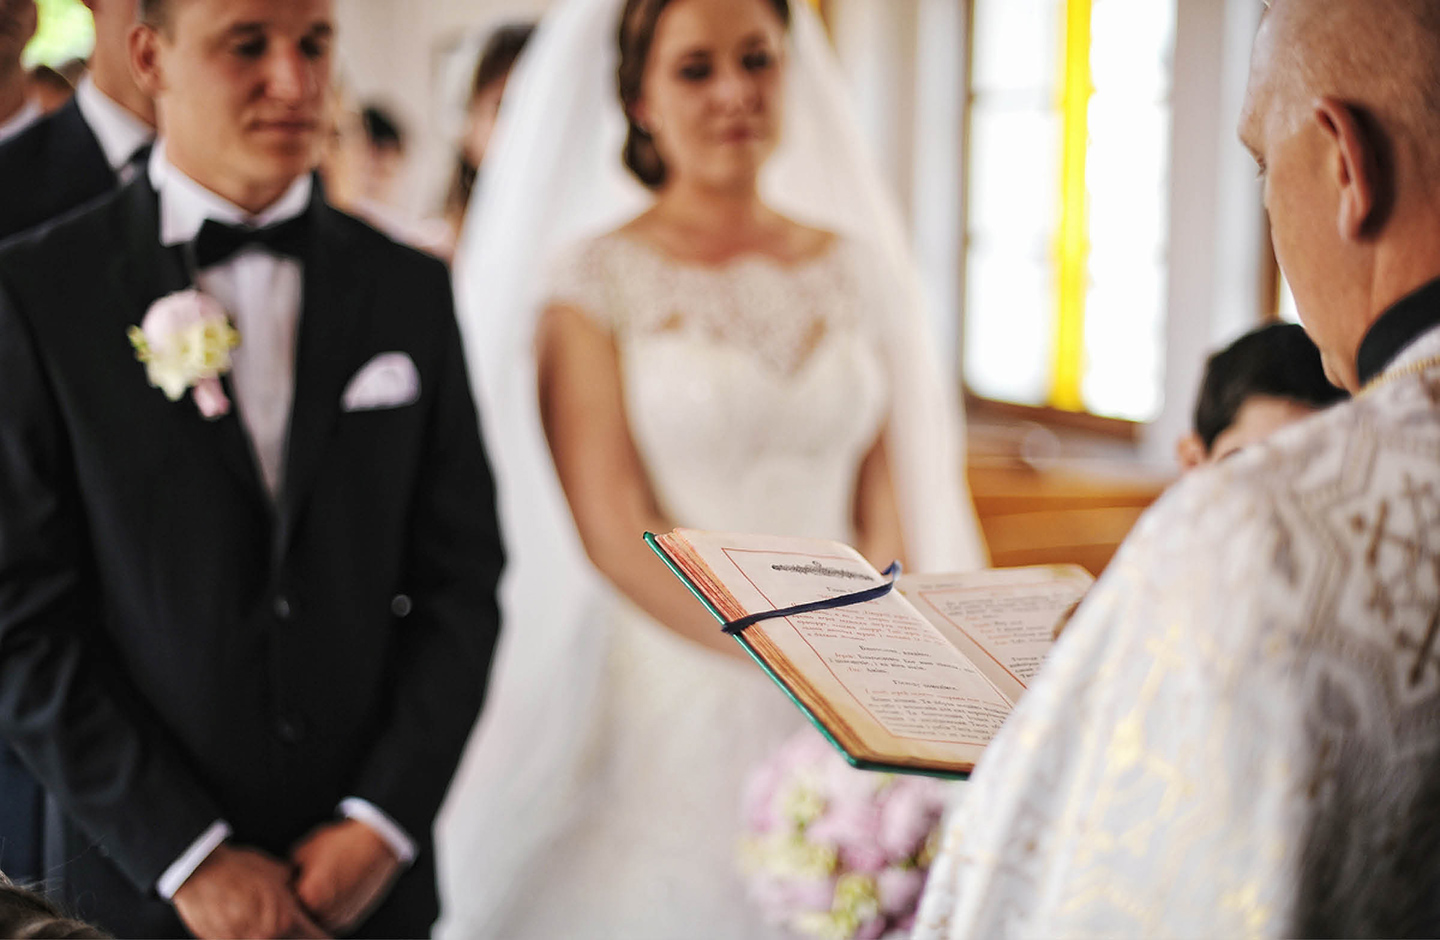 Priester liest aus der Bibel vor. Vor im steht das Hochzeitspaar. 